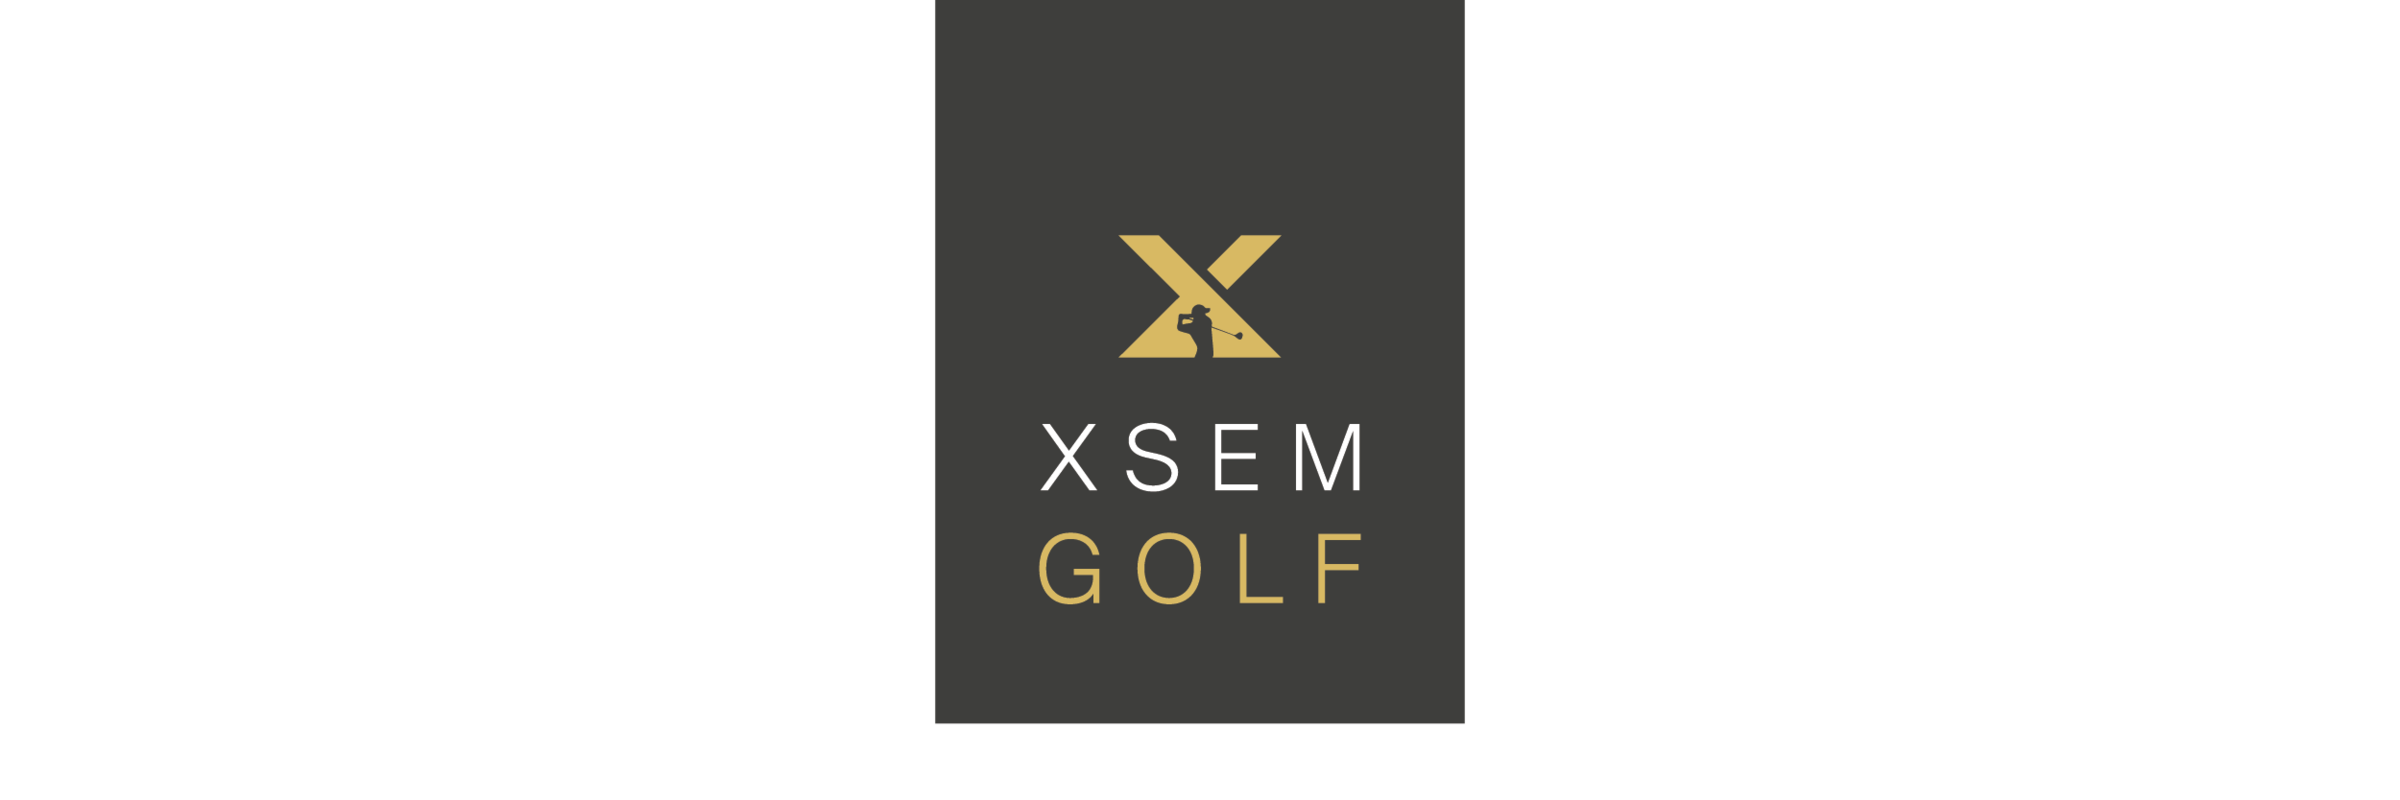 XSEM Golf Day 2021 - register interest